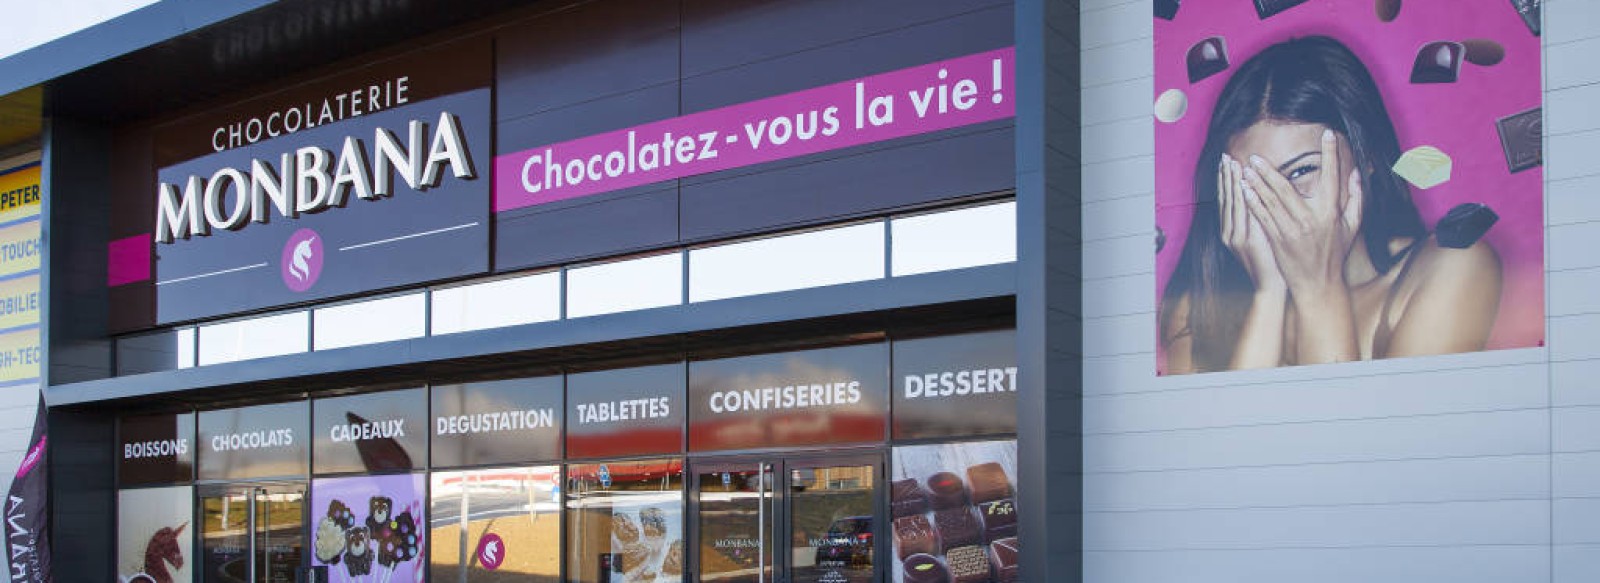 Passtime  Chocolaterie monbana à Saint-malo